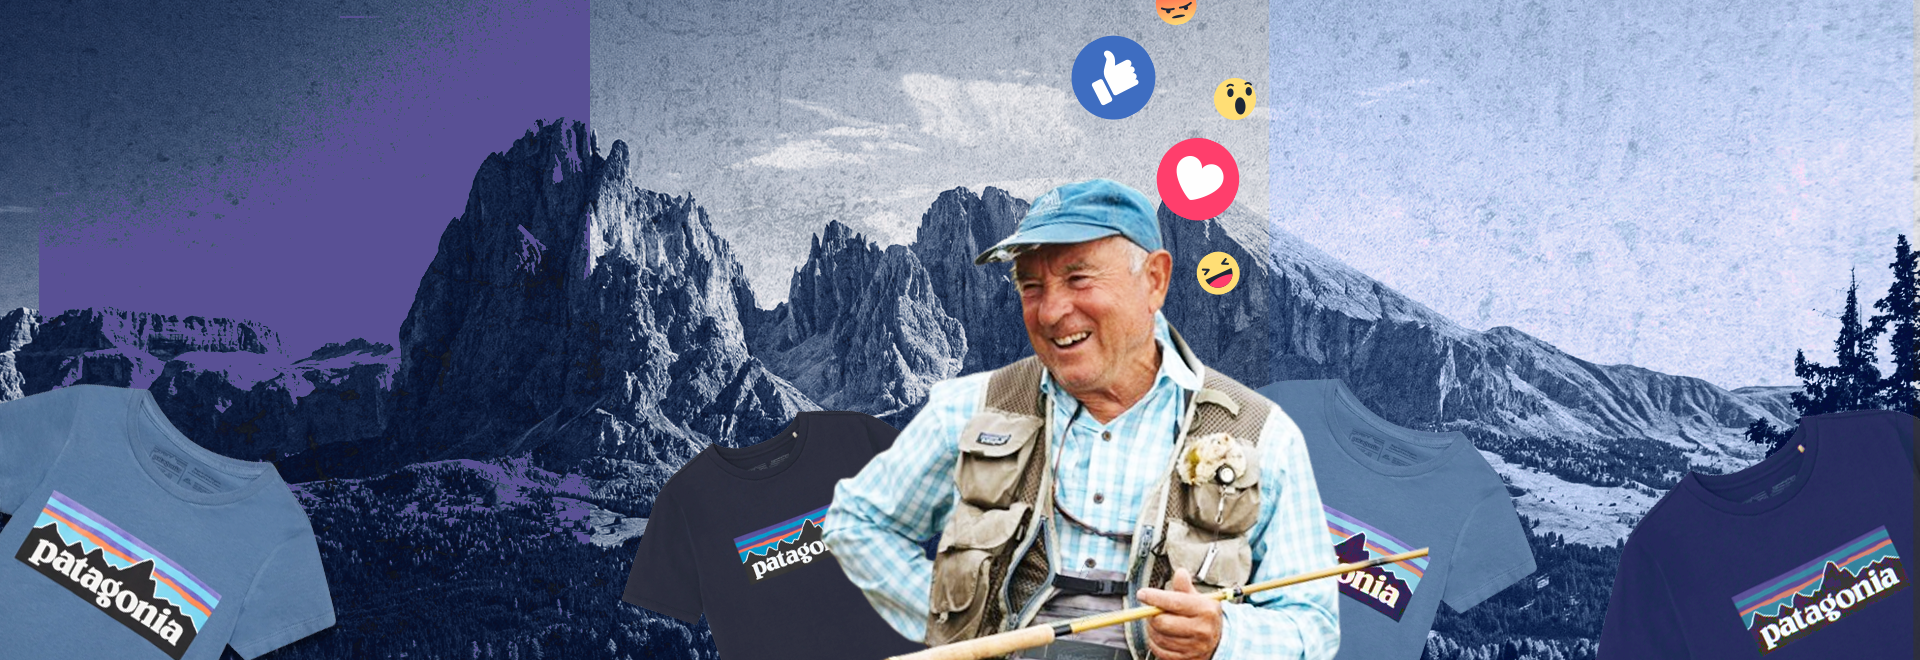 Założyciel Patagonii oddaje firmę — i zbiera niesamowite wyniki w social mediach